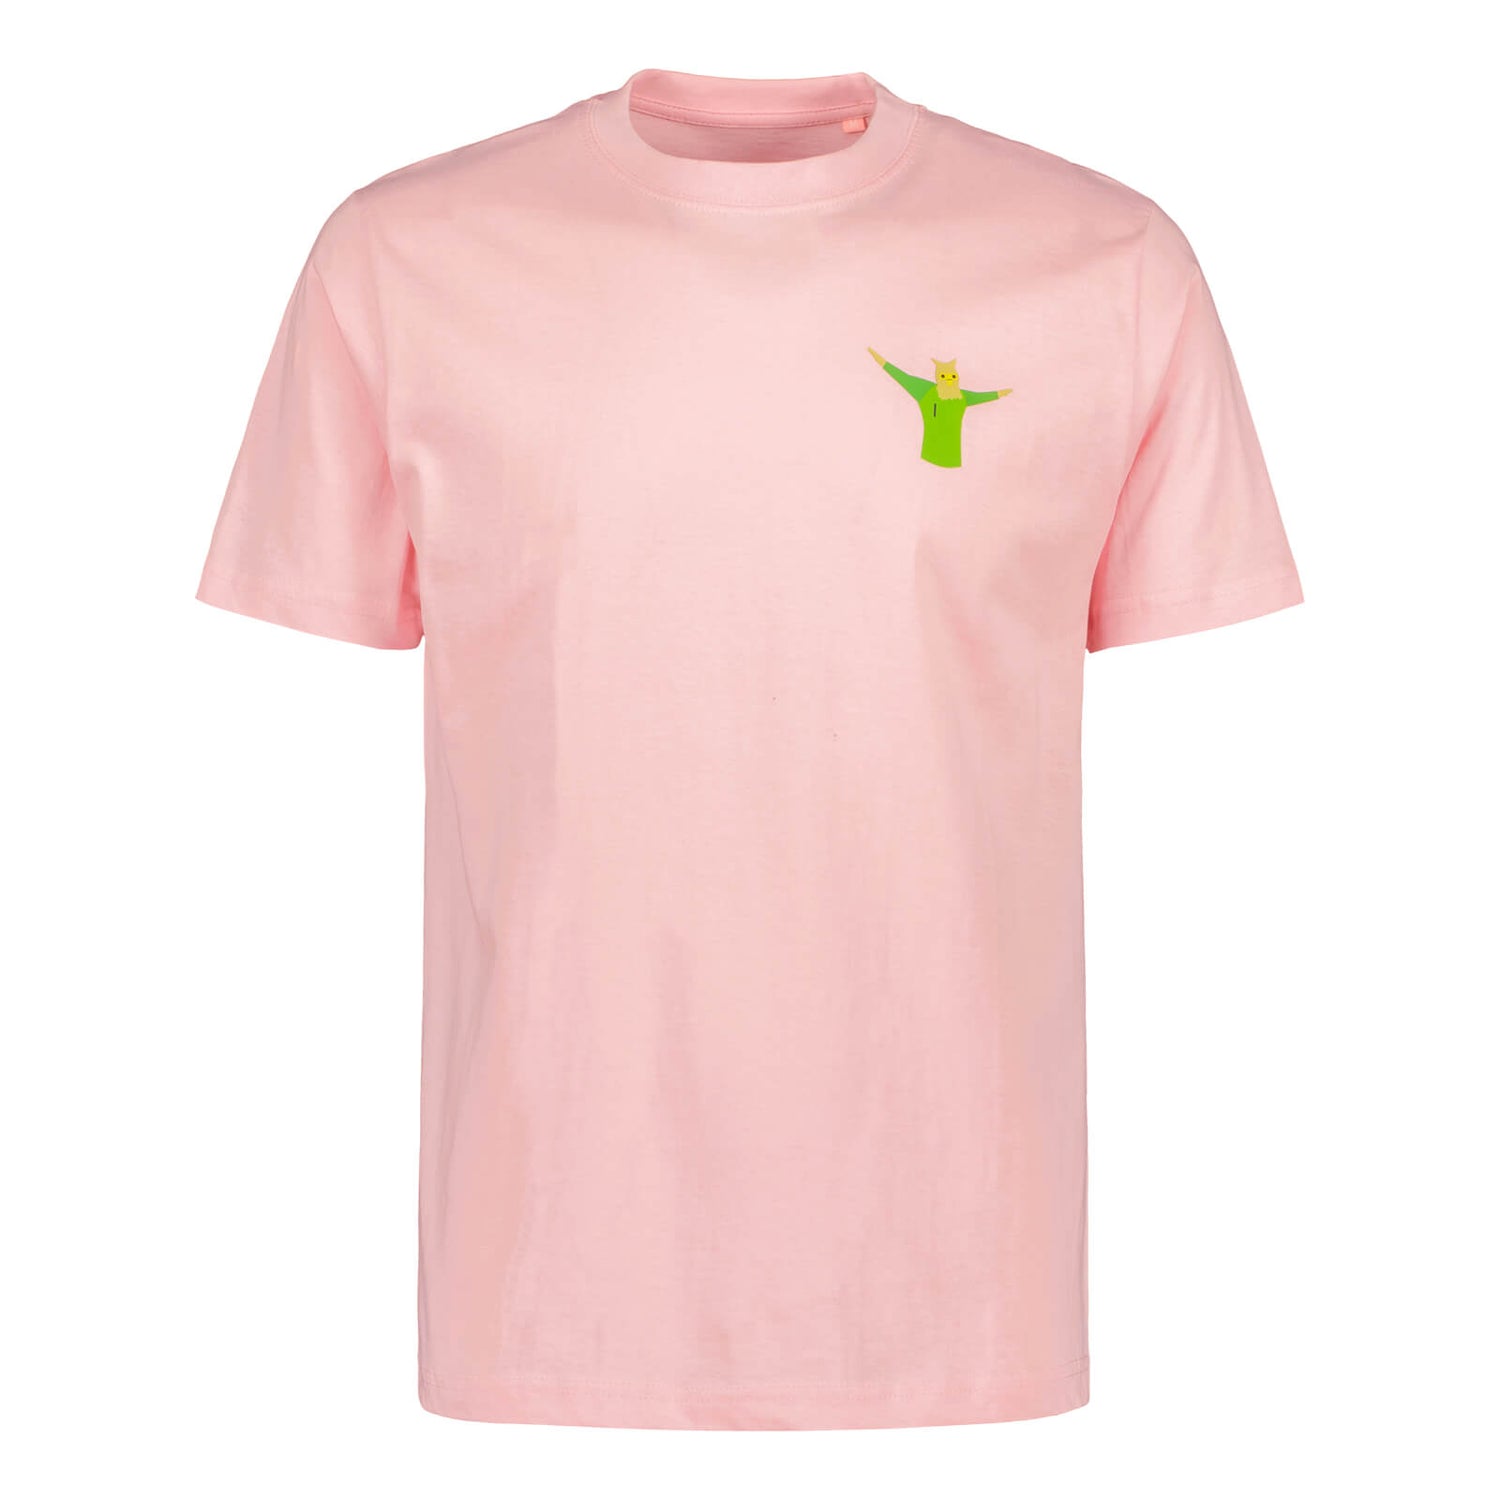 HUU Luke t-paita, Vaaleanpunainen, Lapset